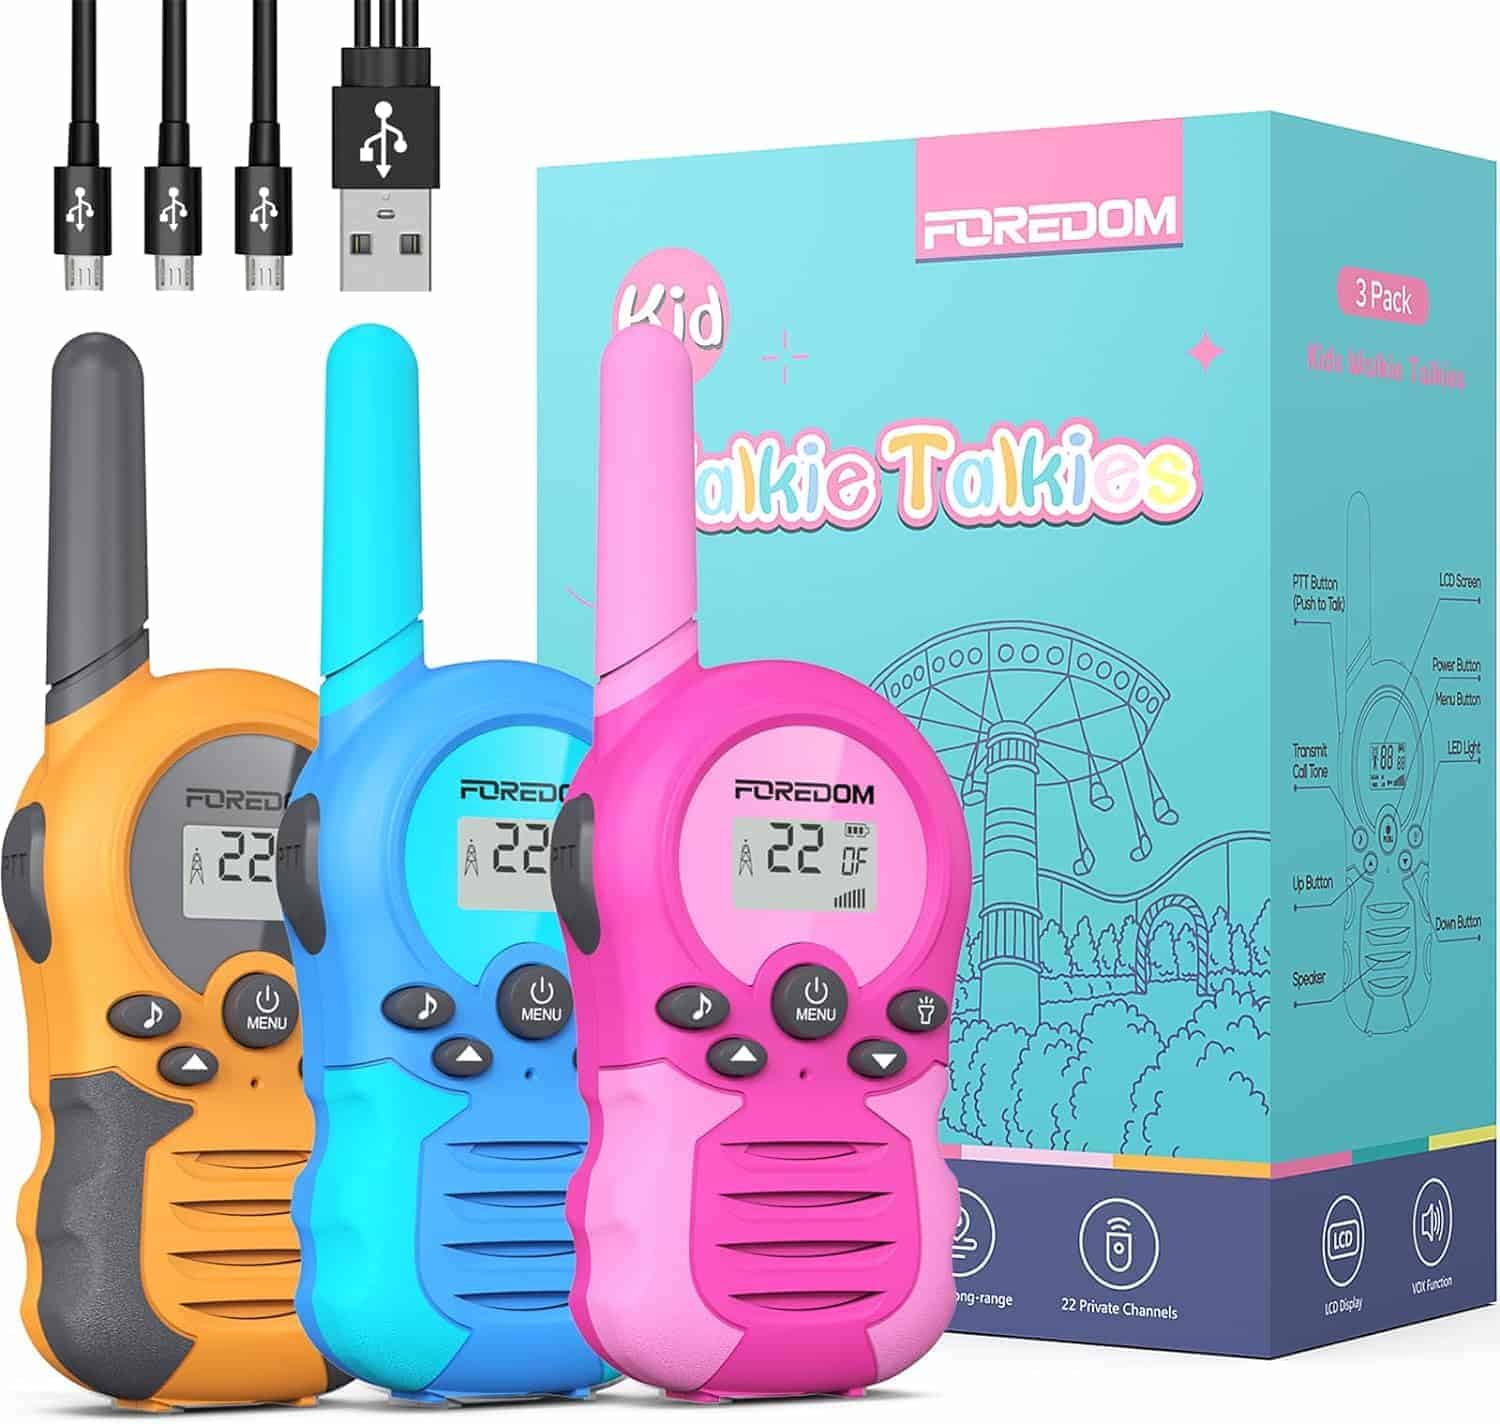 HPROMOT Rechargeable walkietalkies for Kids